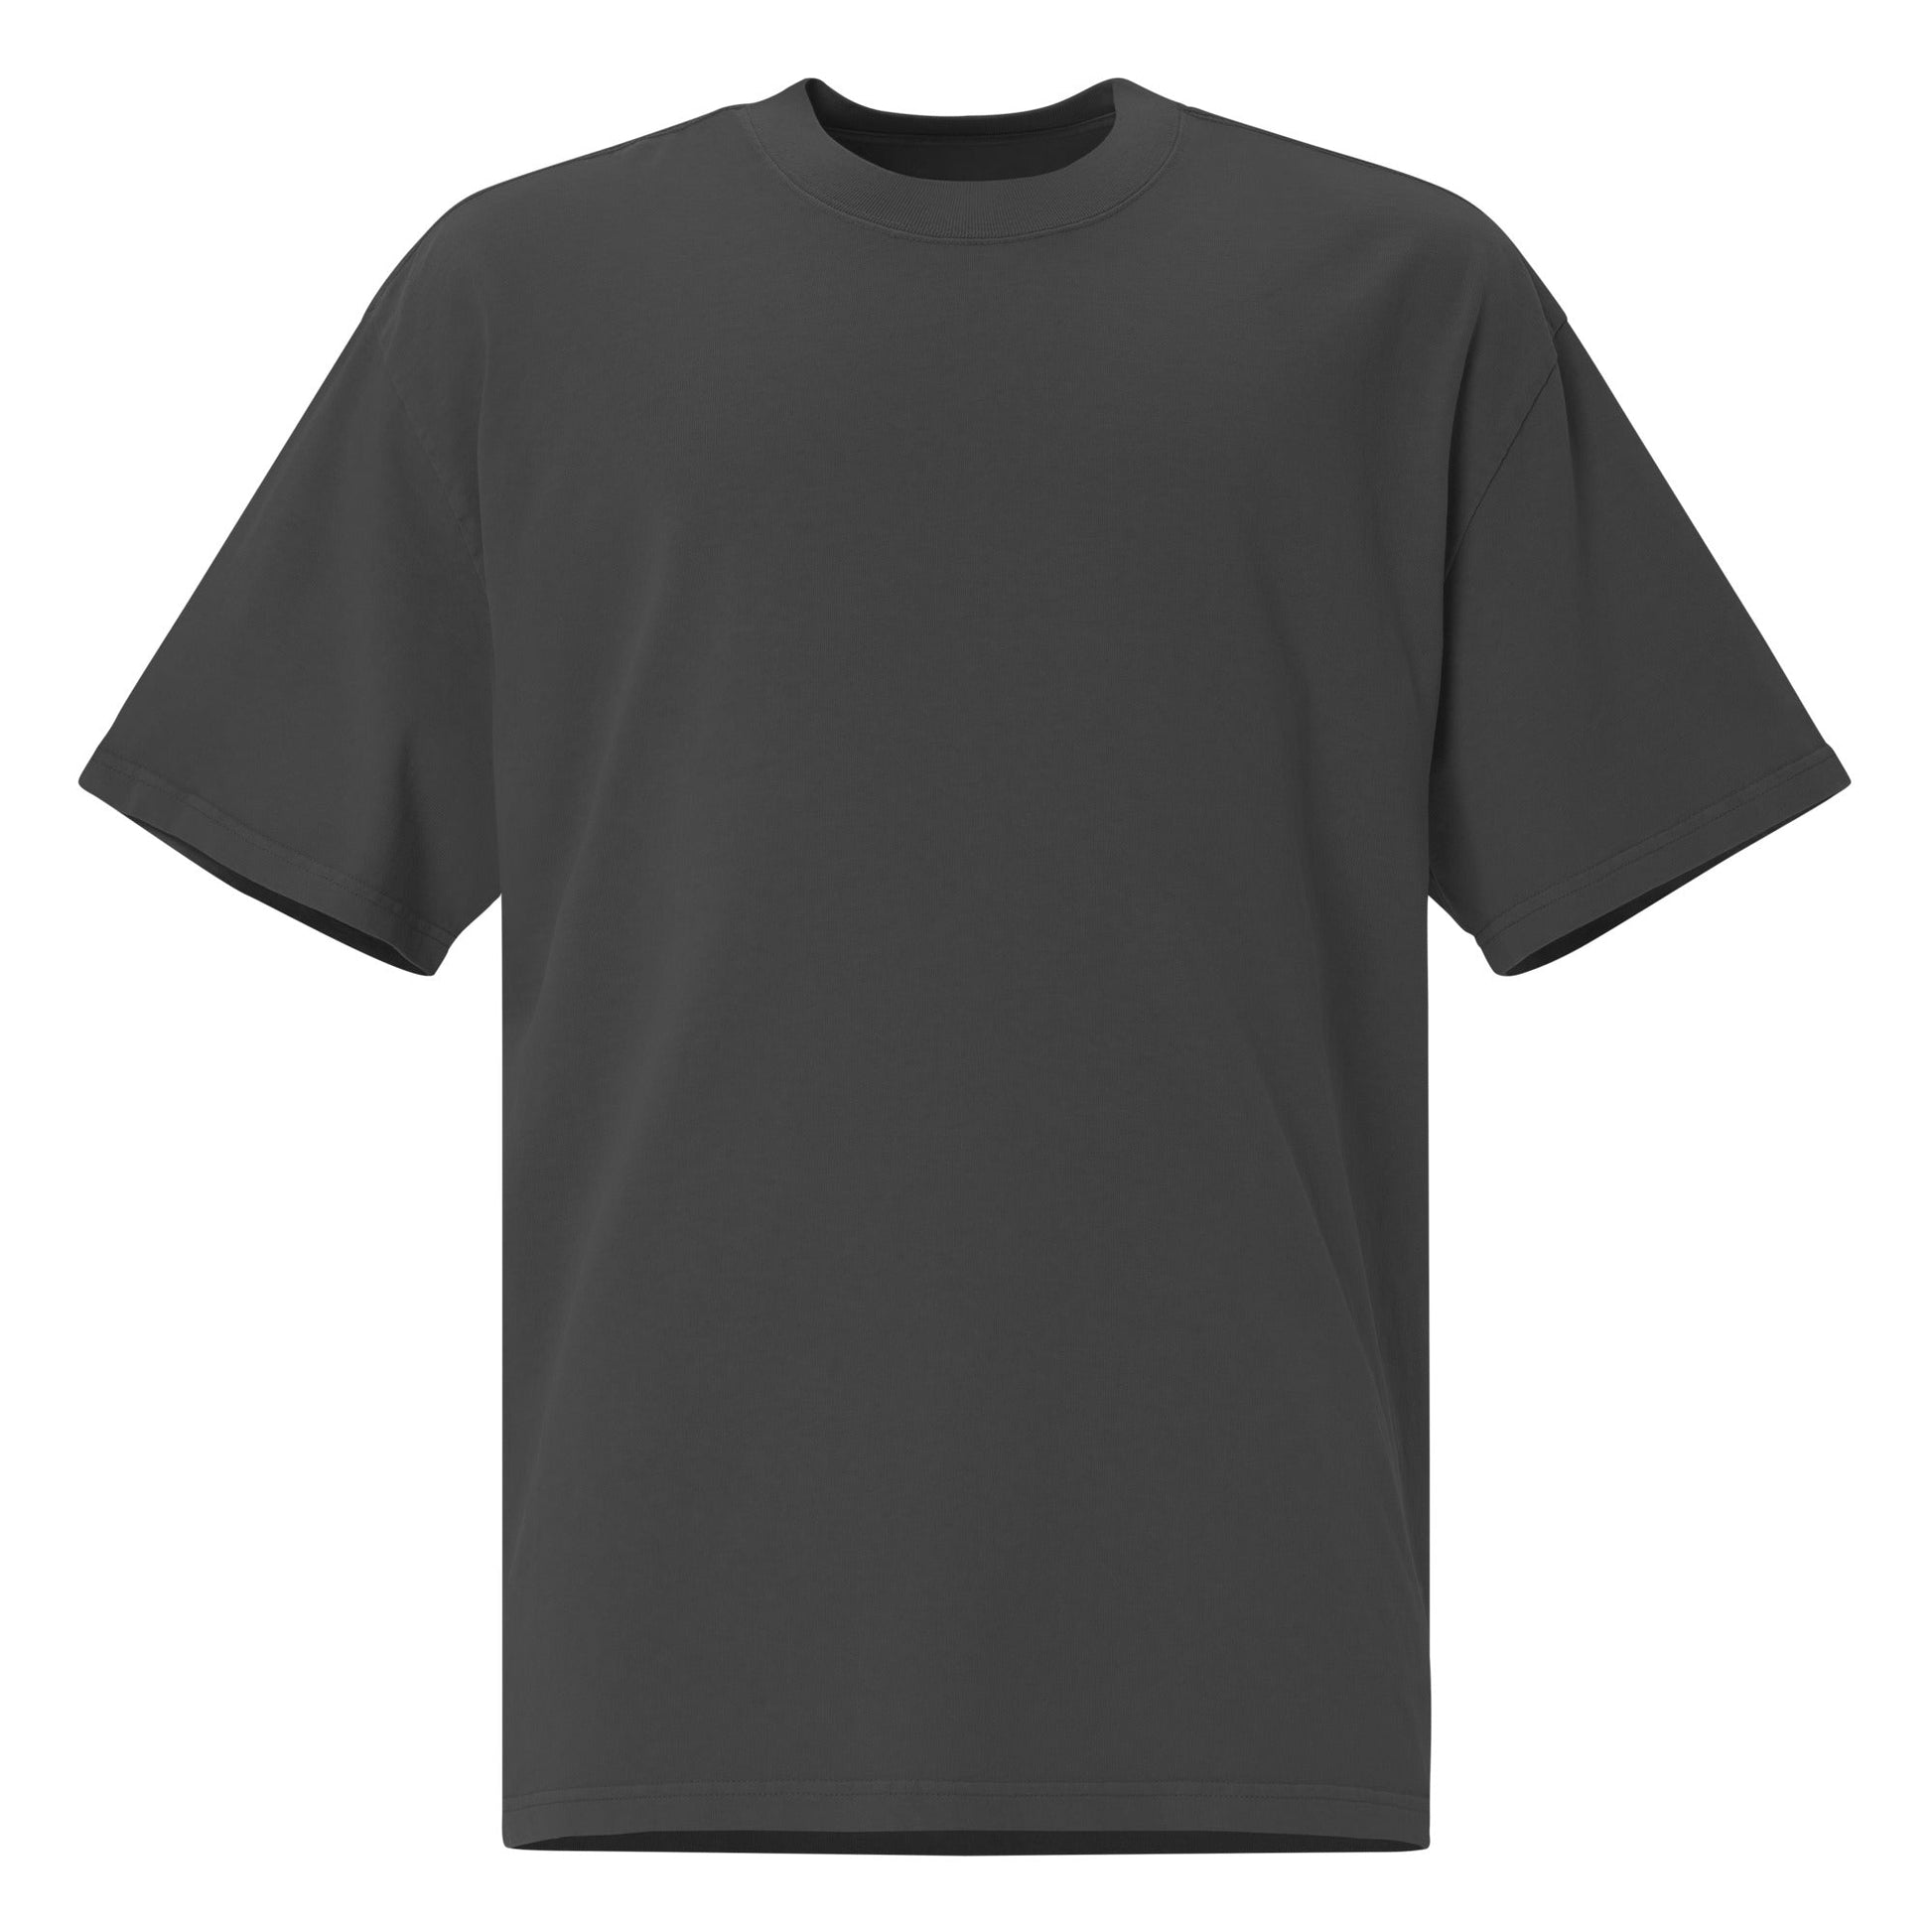 RUG 1 Unisex Oversized Faded T-Shirt - BONOTEE